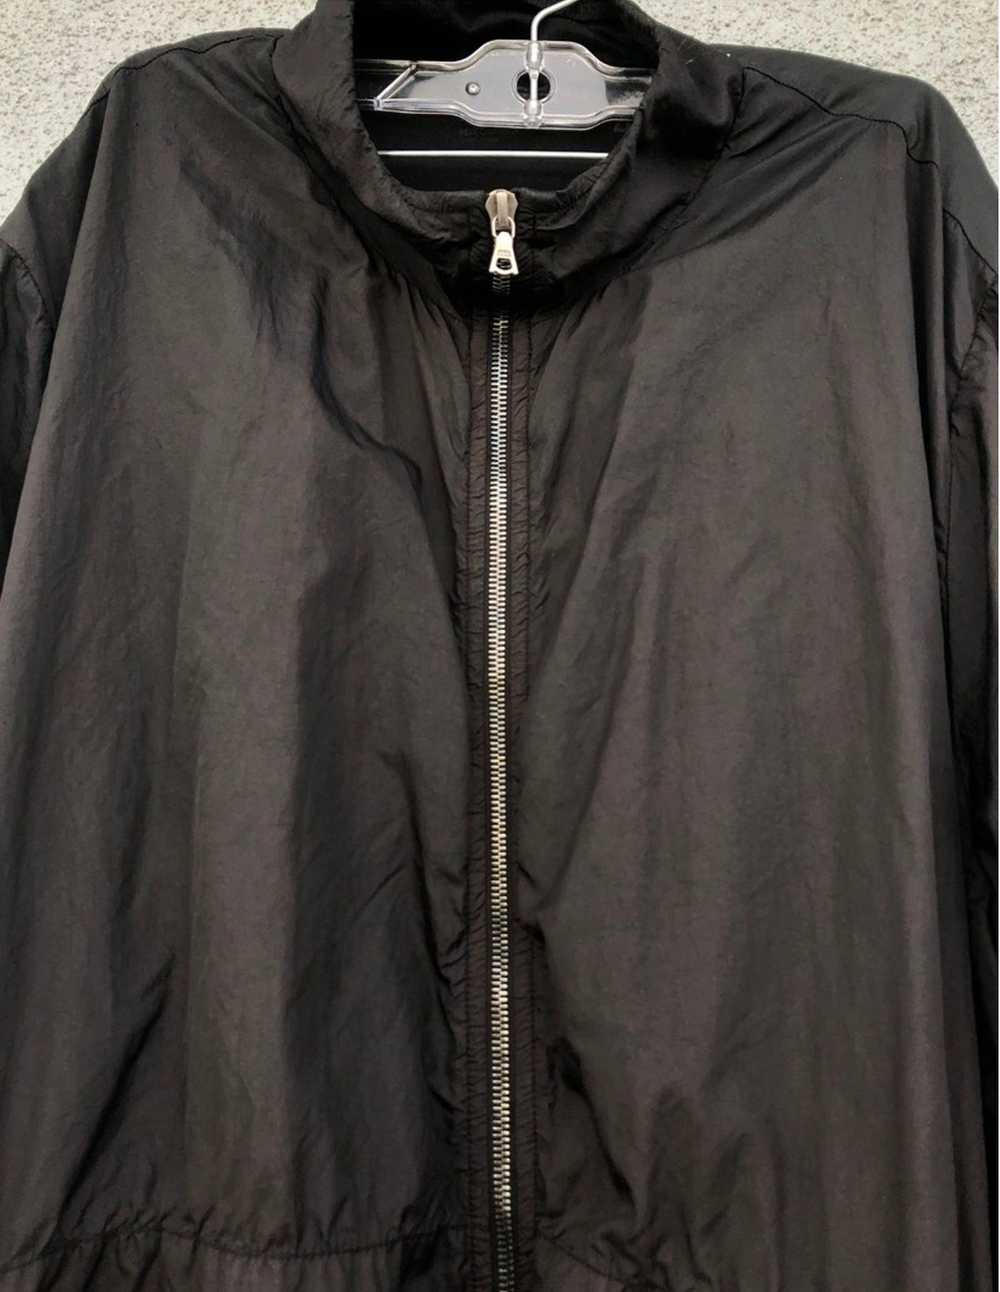 James Perse Yosemite zip up jacket - image 2